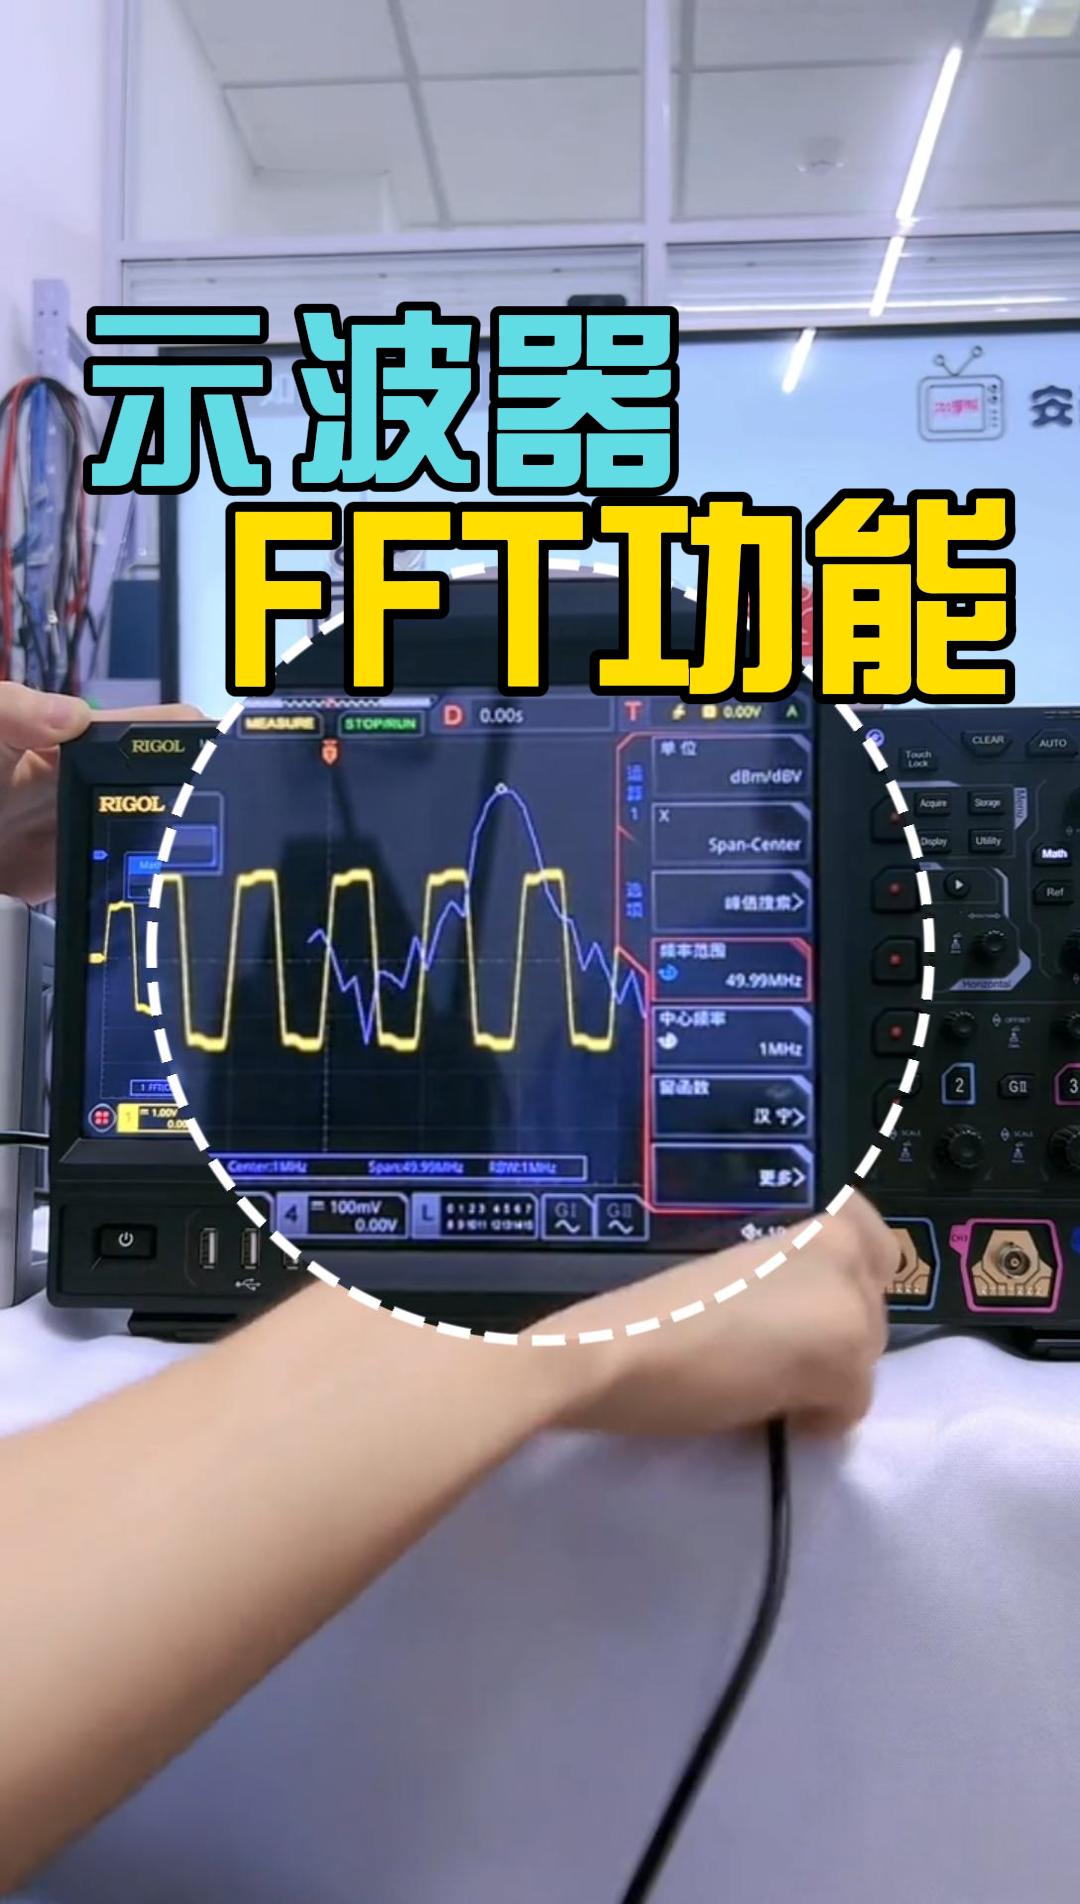 示波器FFT频谱分析仪功能如何使用？测试精度可以达标吗？#示波器 #示波器使用教程 #FFT #频谱分析仪 